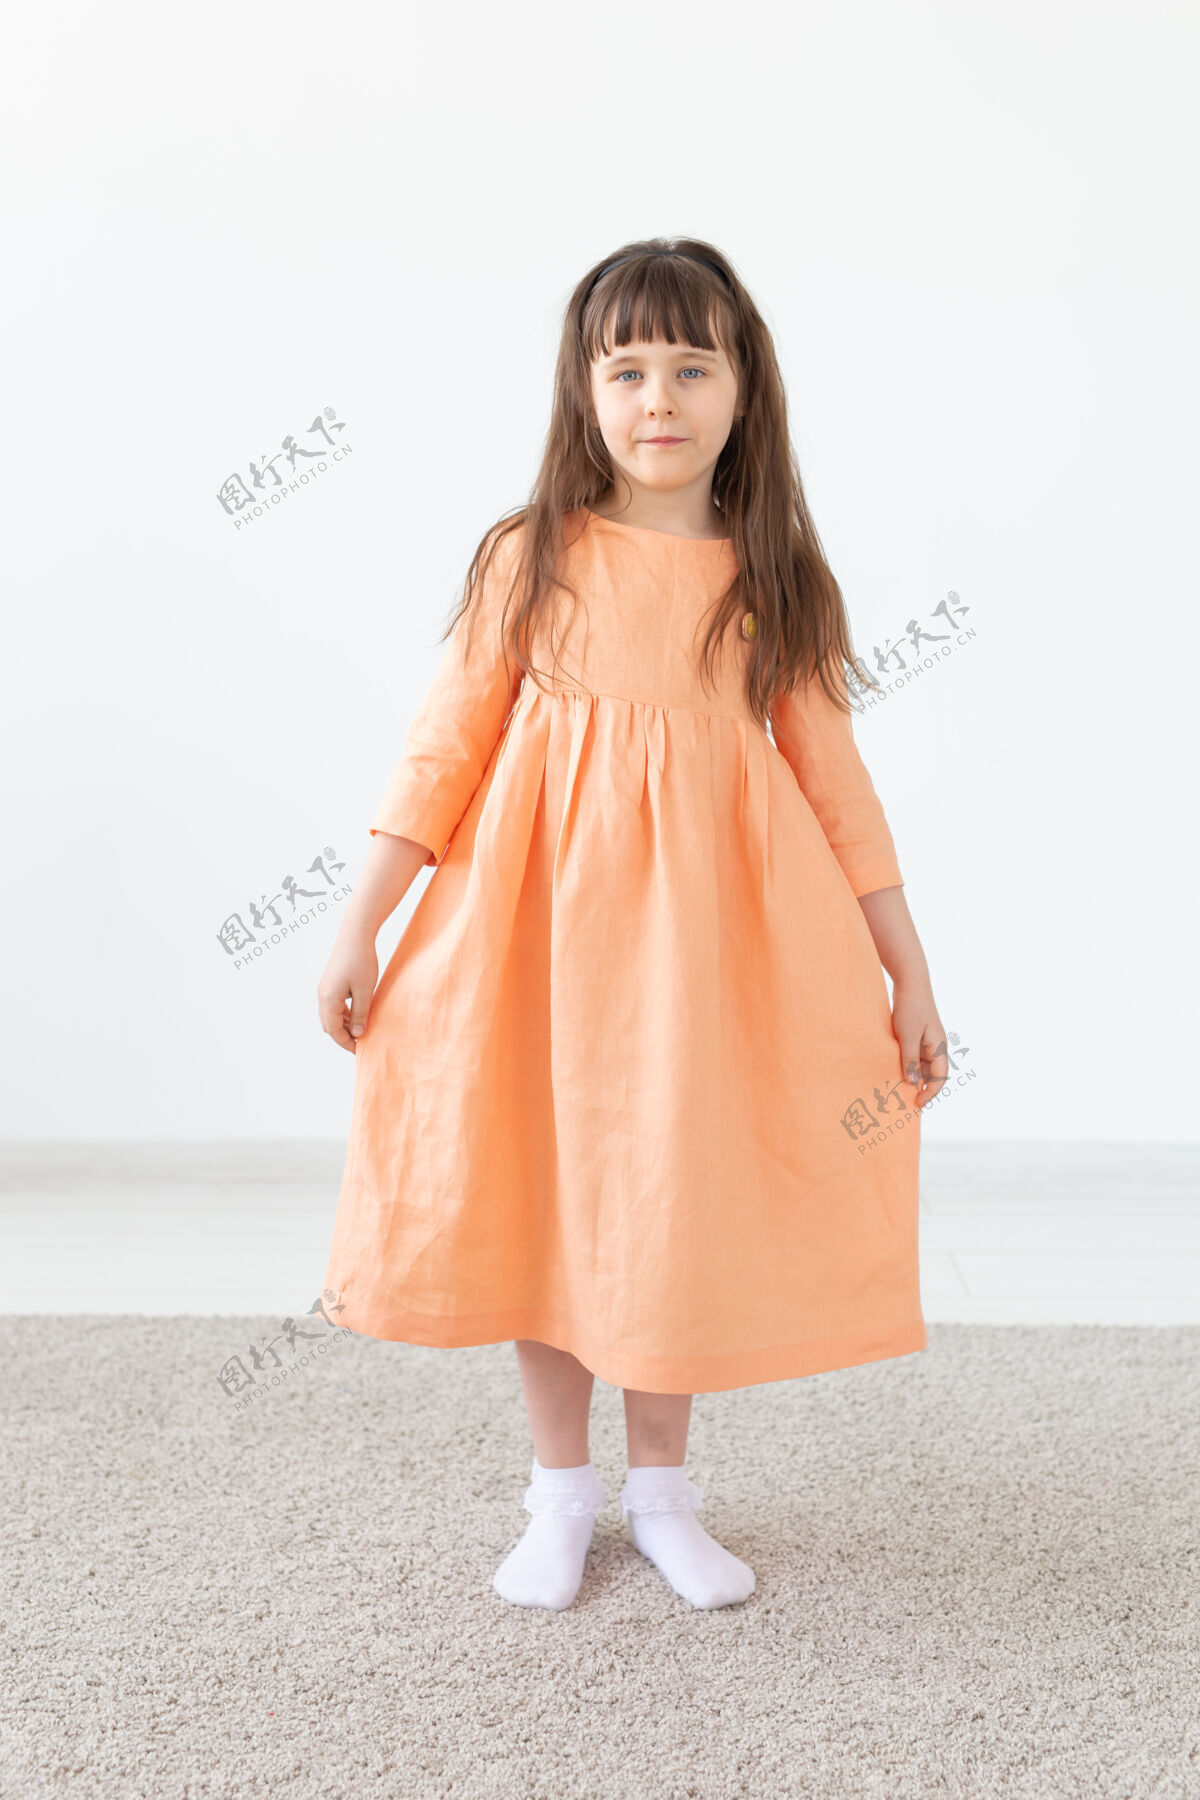 漂亮一个穿桃红色衣服的孩子对着白墙摆姿势小穿着儿童